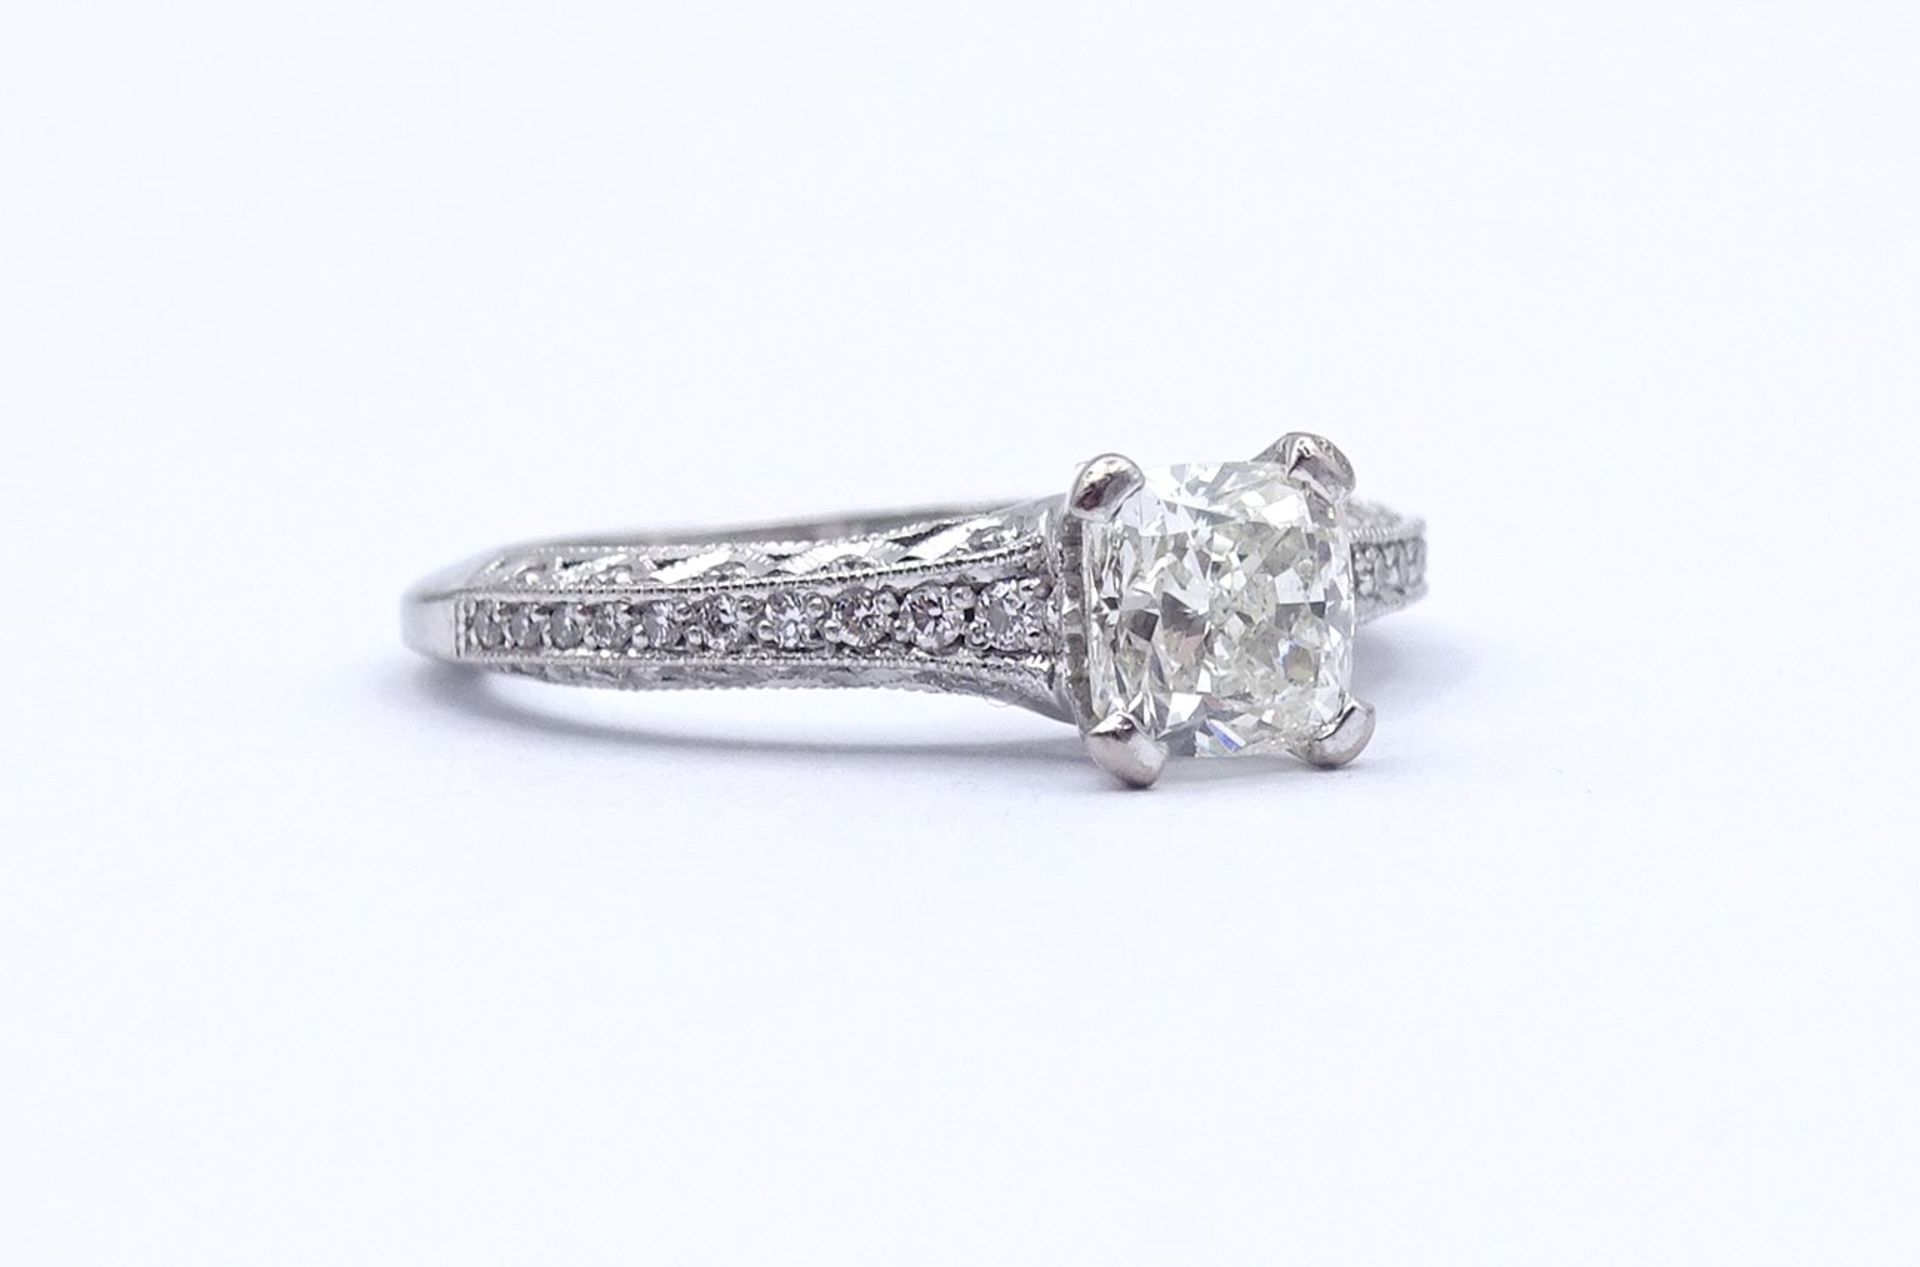 Princess Cut Ring - Verlobungsring , Princess 1,0ct., und 47 kl. Diamanten si, G-H, WG 18K "Tacori" - Image 15 of 20